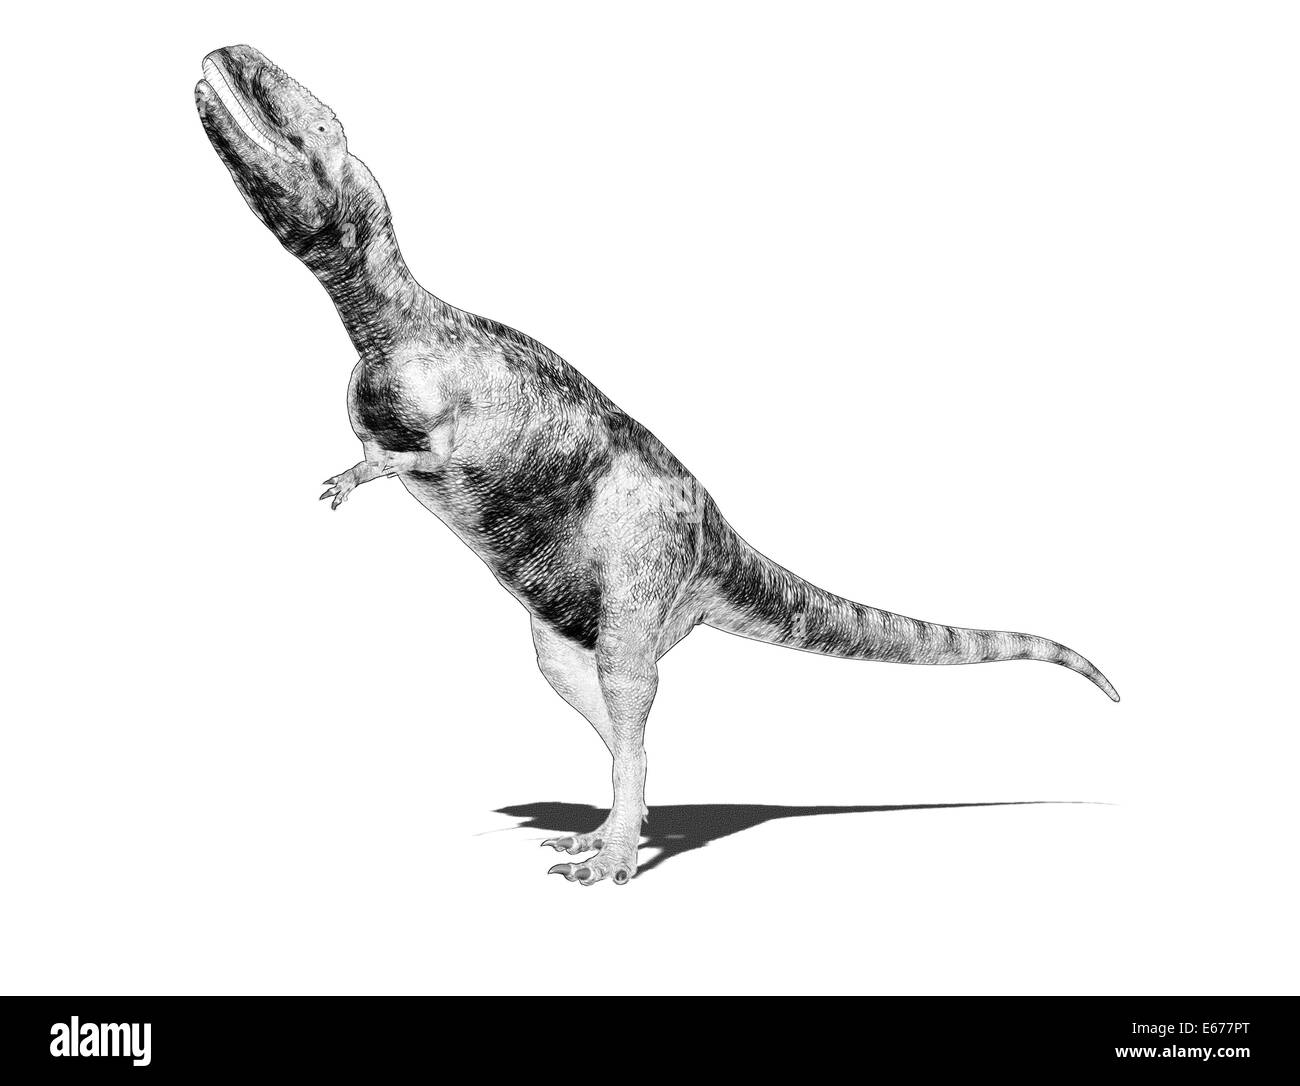 Dinosaurier Abelisaurus / dinosaur Abelisaurus Stock Photo